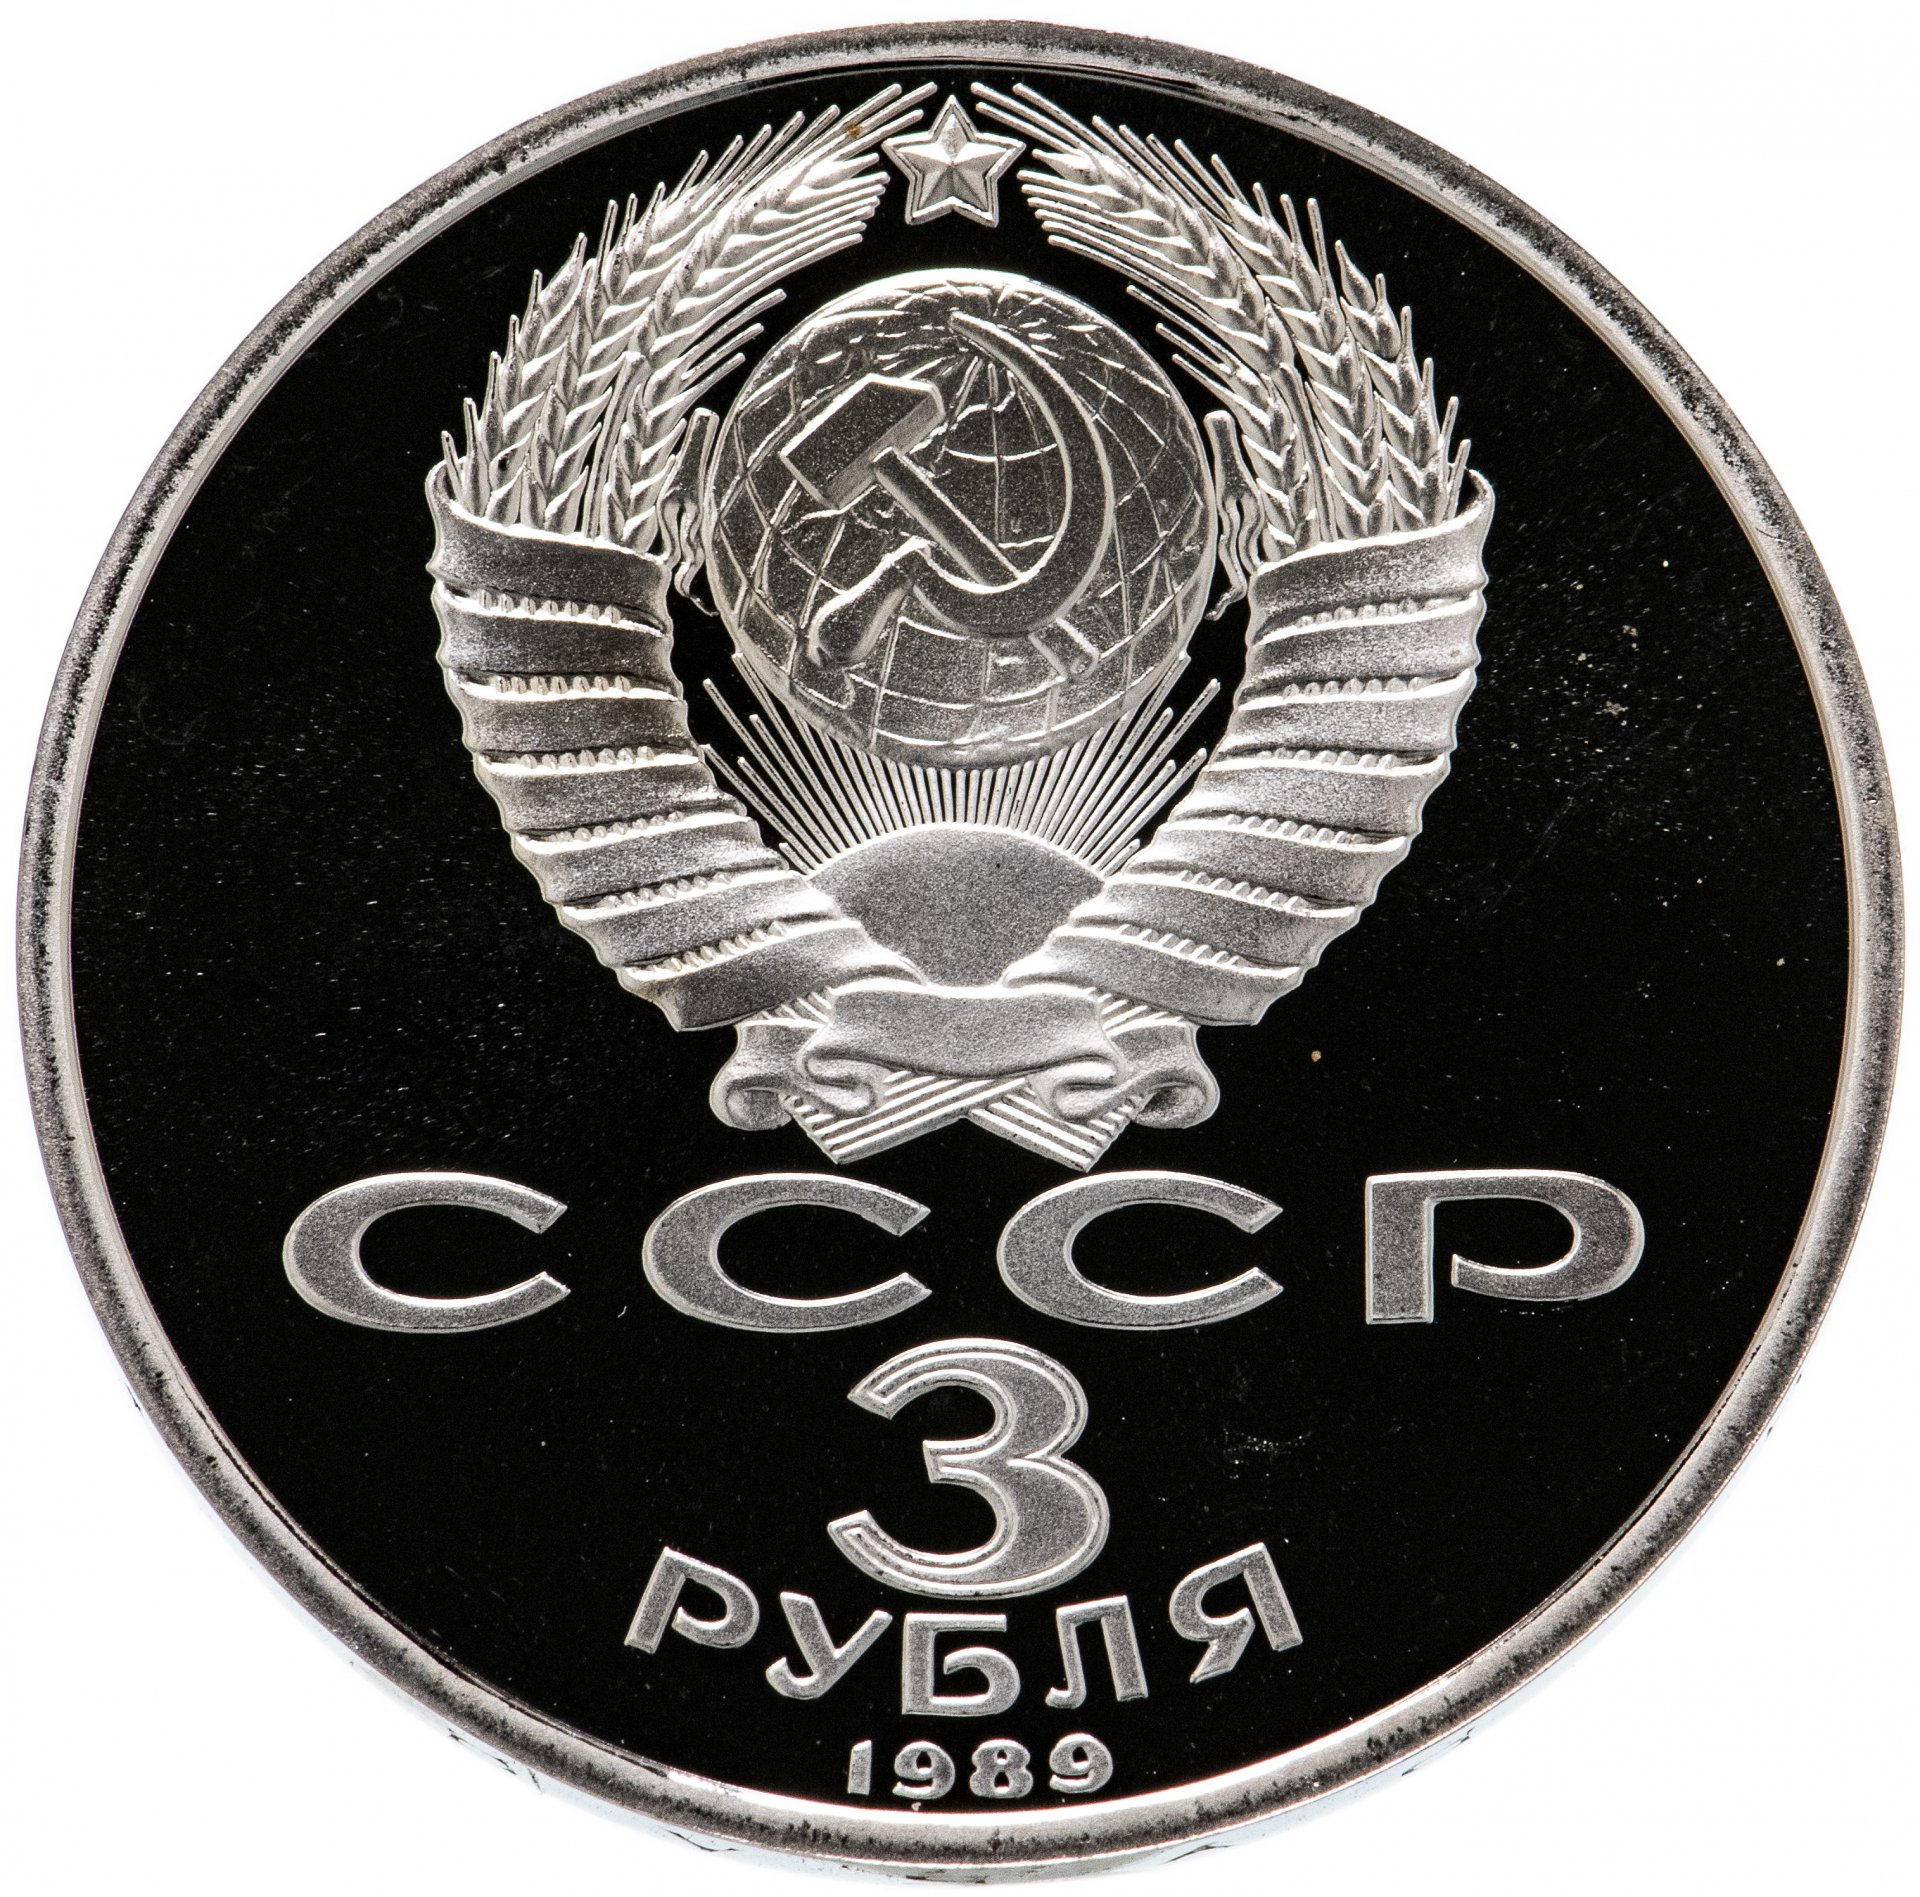 Новый три рубля